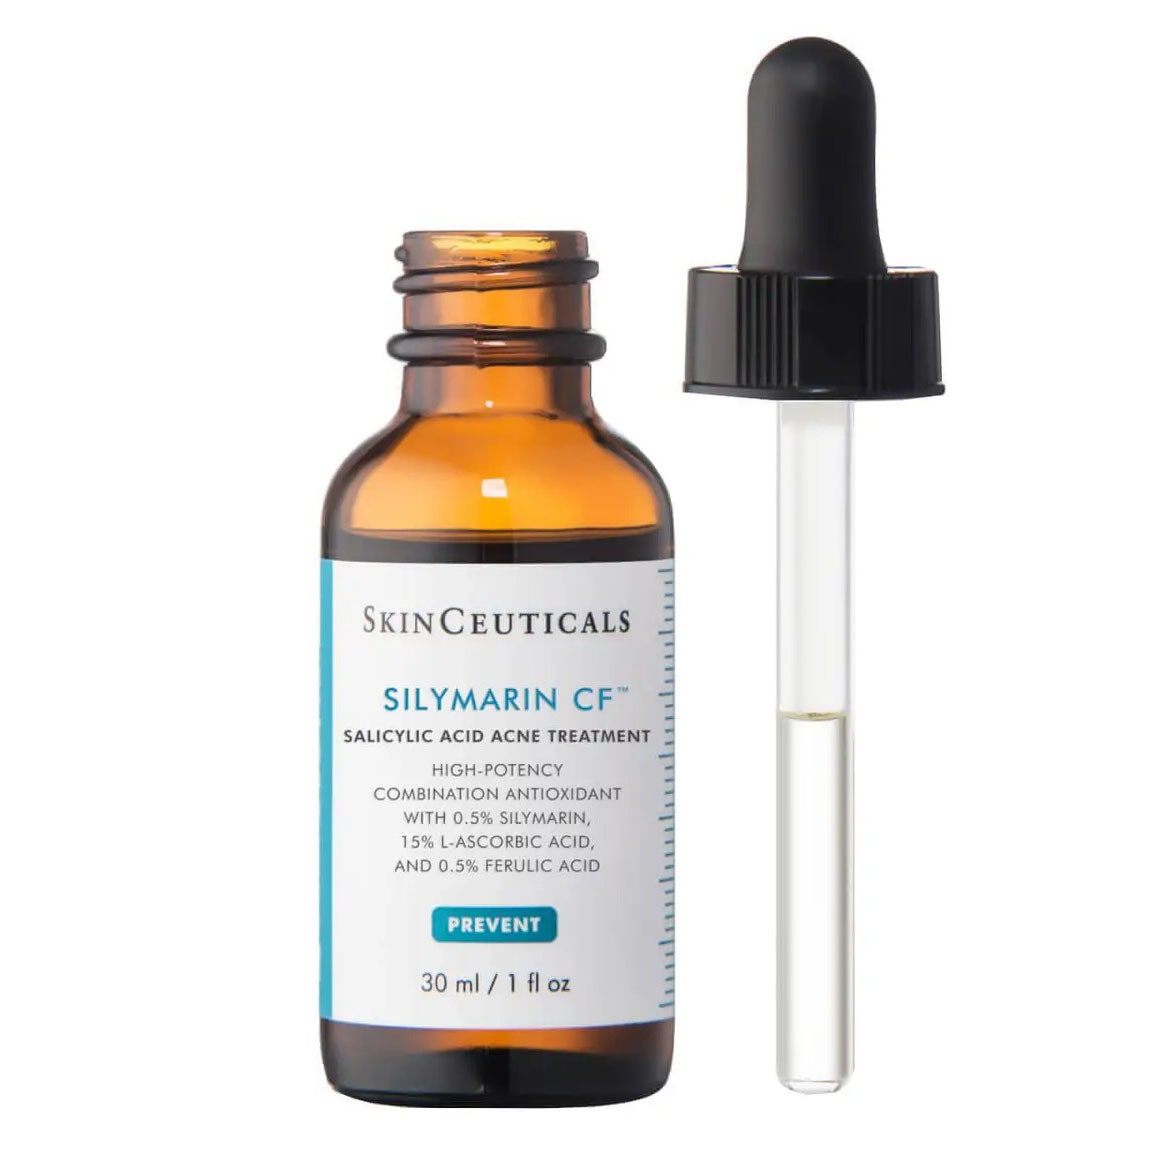 SkinCeuticals Silymarin CF Serumflasche und Tropfer auf weißem Hintergrund